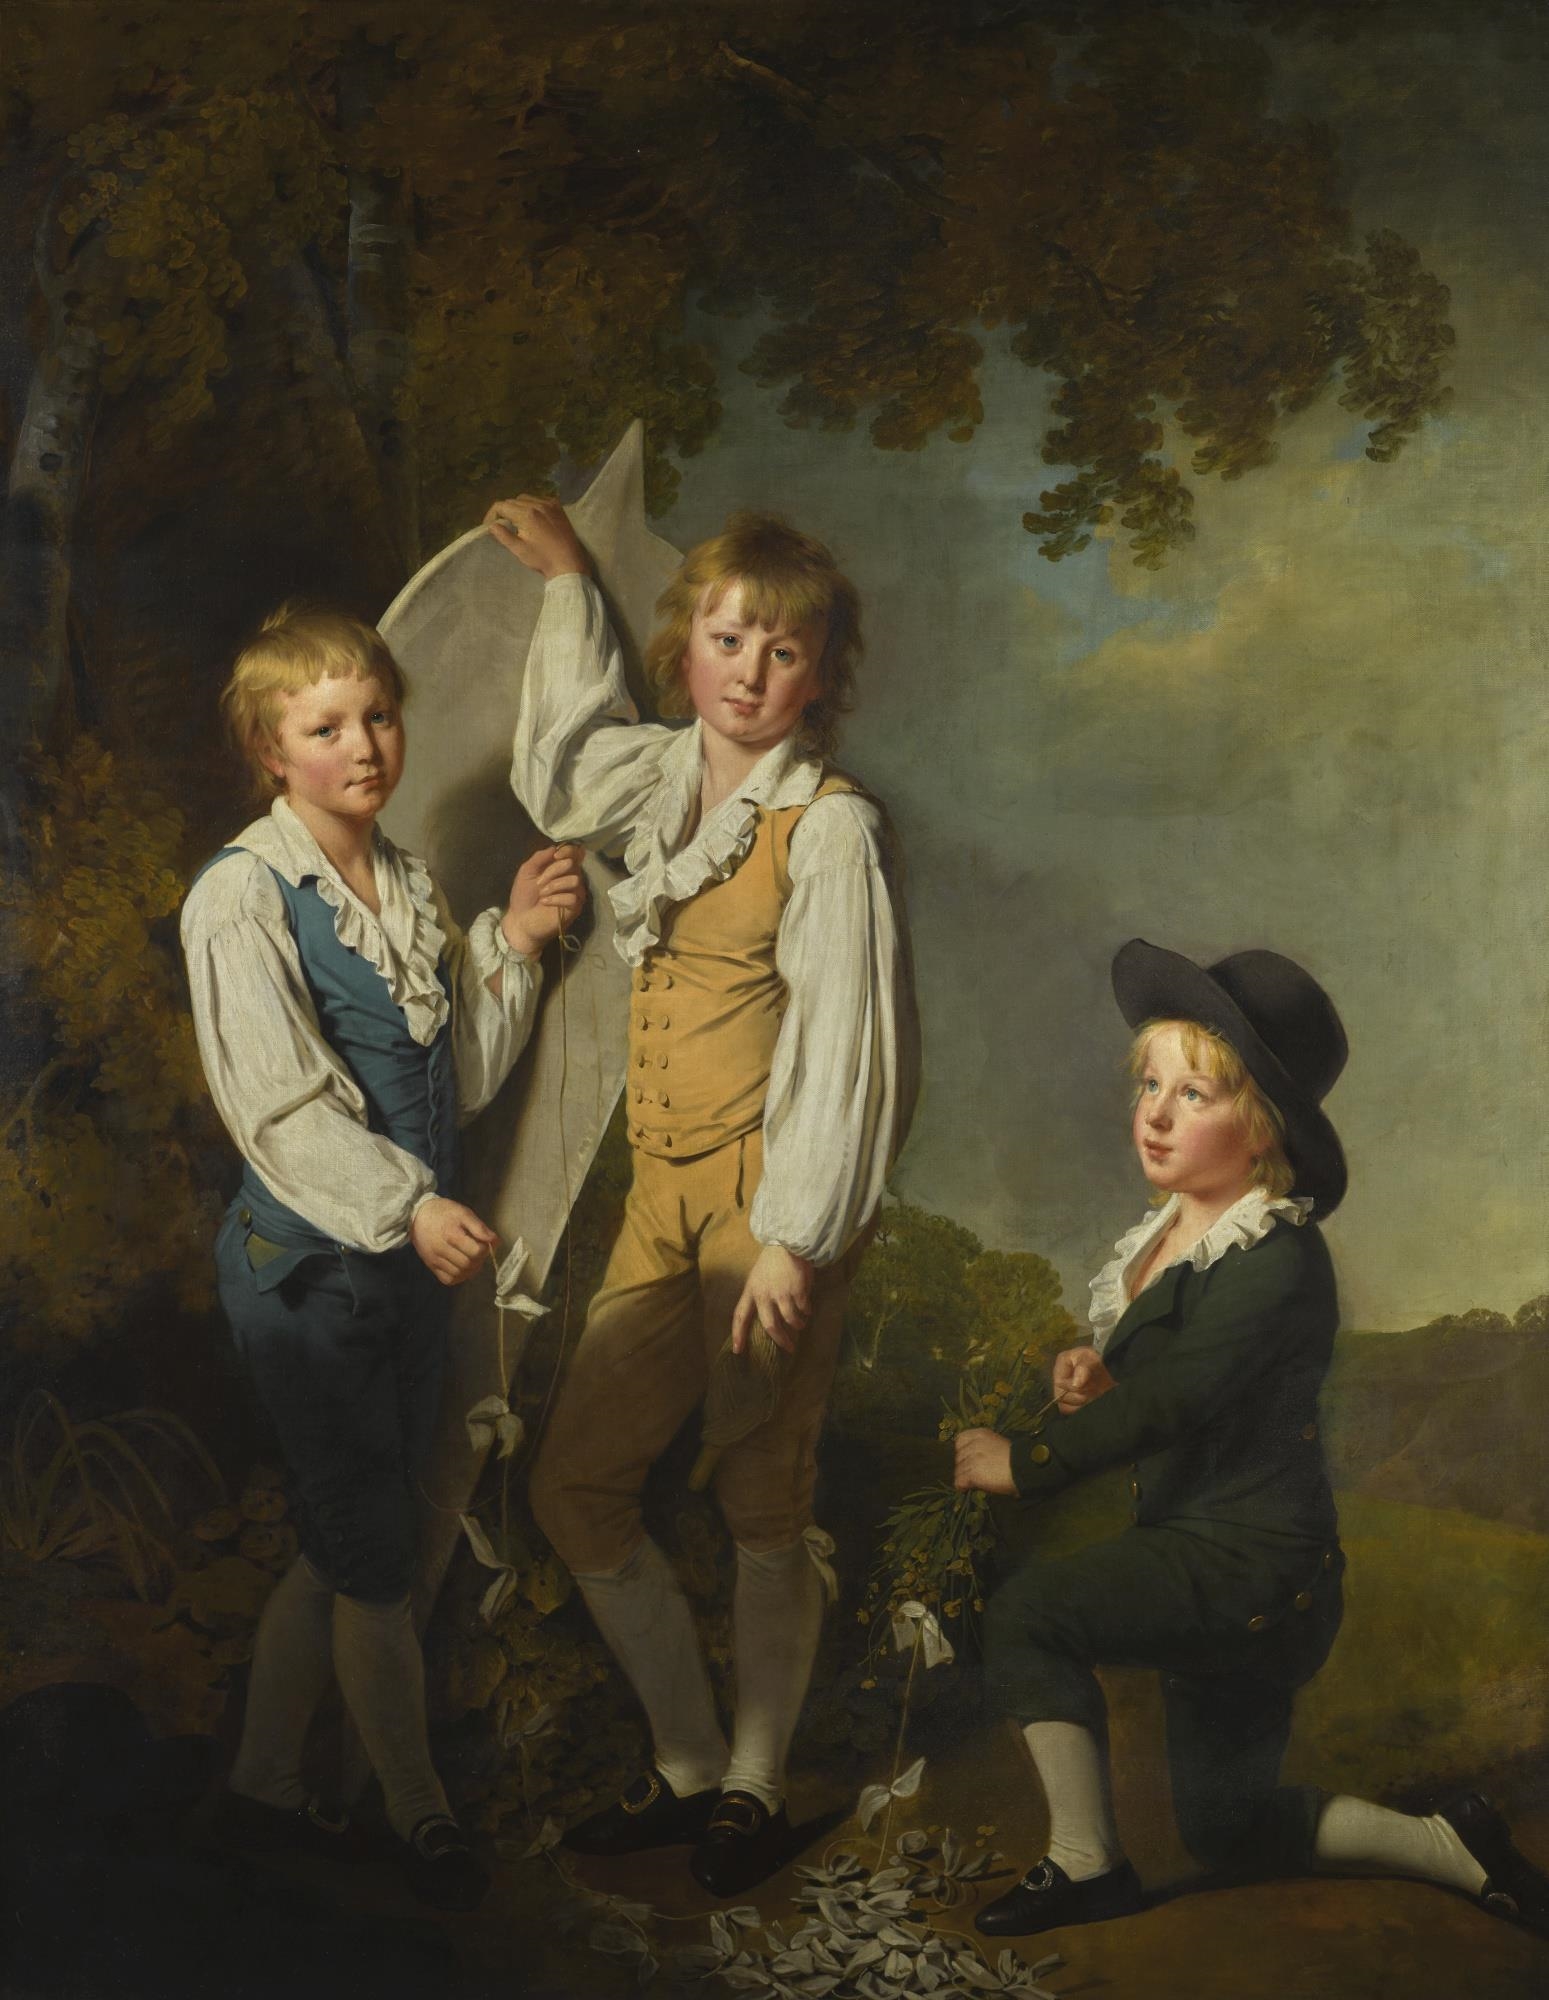 Мальчики 18 века. Joseph Wright of Derby картины.